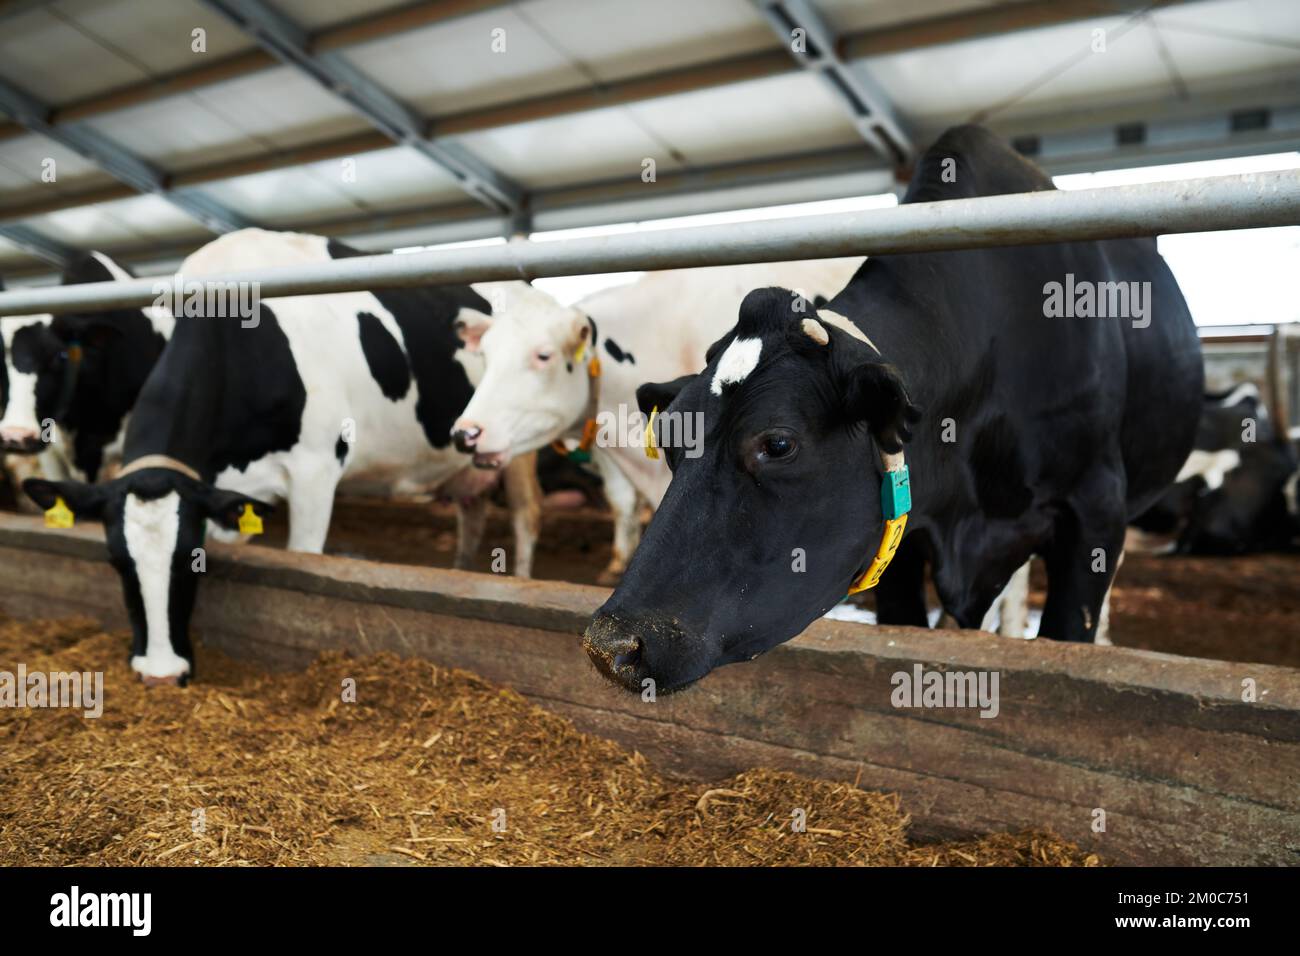 Rangée de vaches laitières noires et blanches debout dans un abri de vache d'une énorme ferme d'élevage moderne et mangeant du fourrage spécial du fourrager Banque D'Images